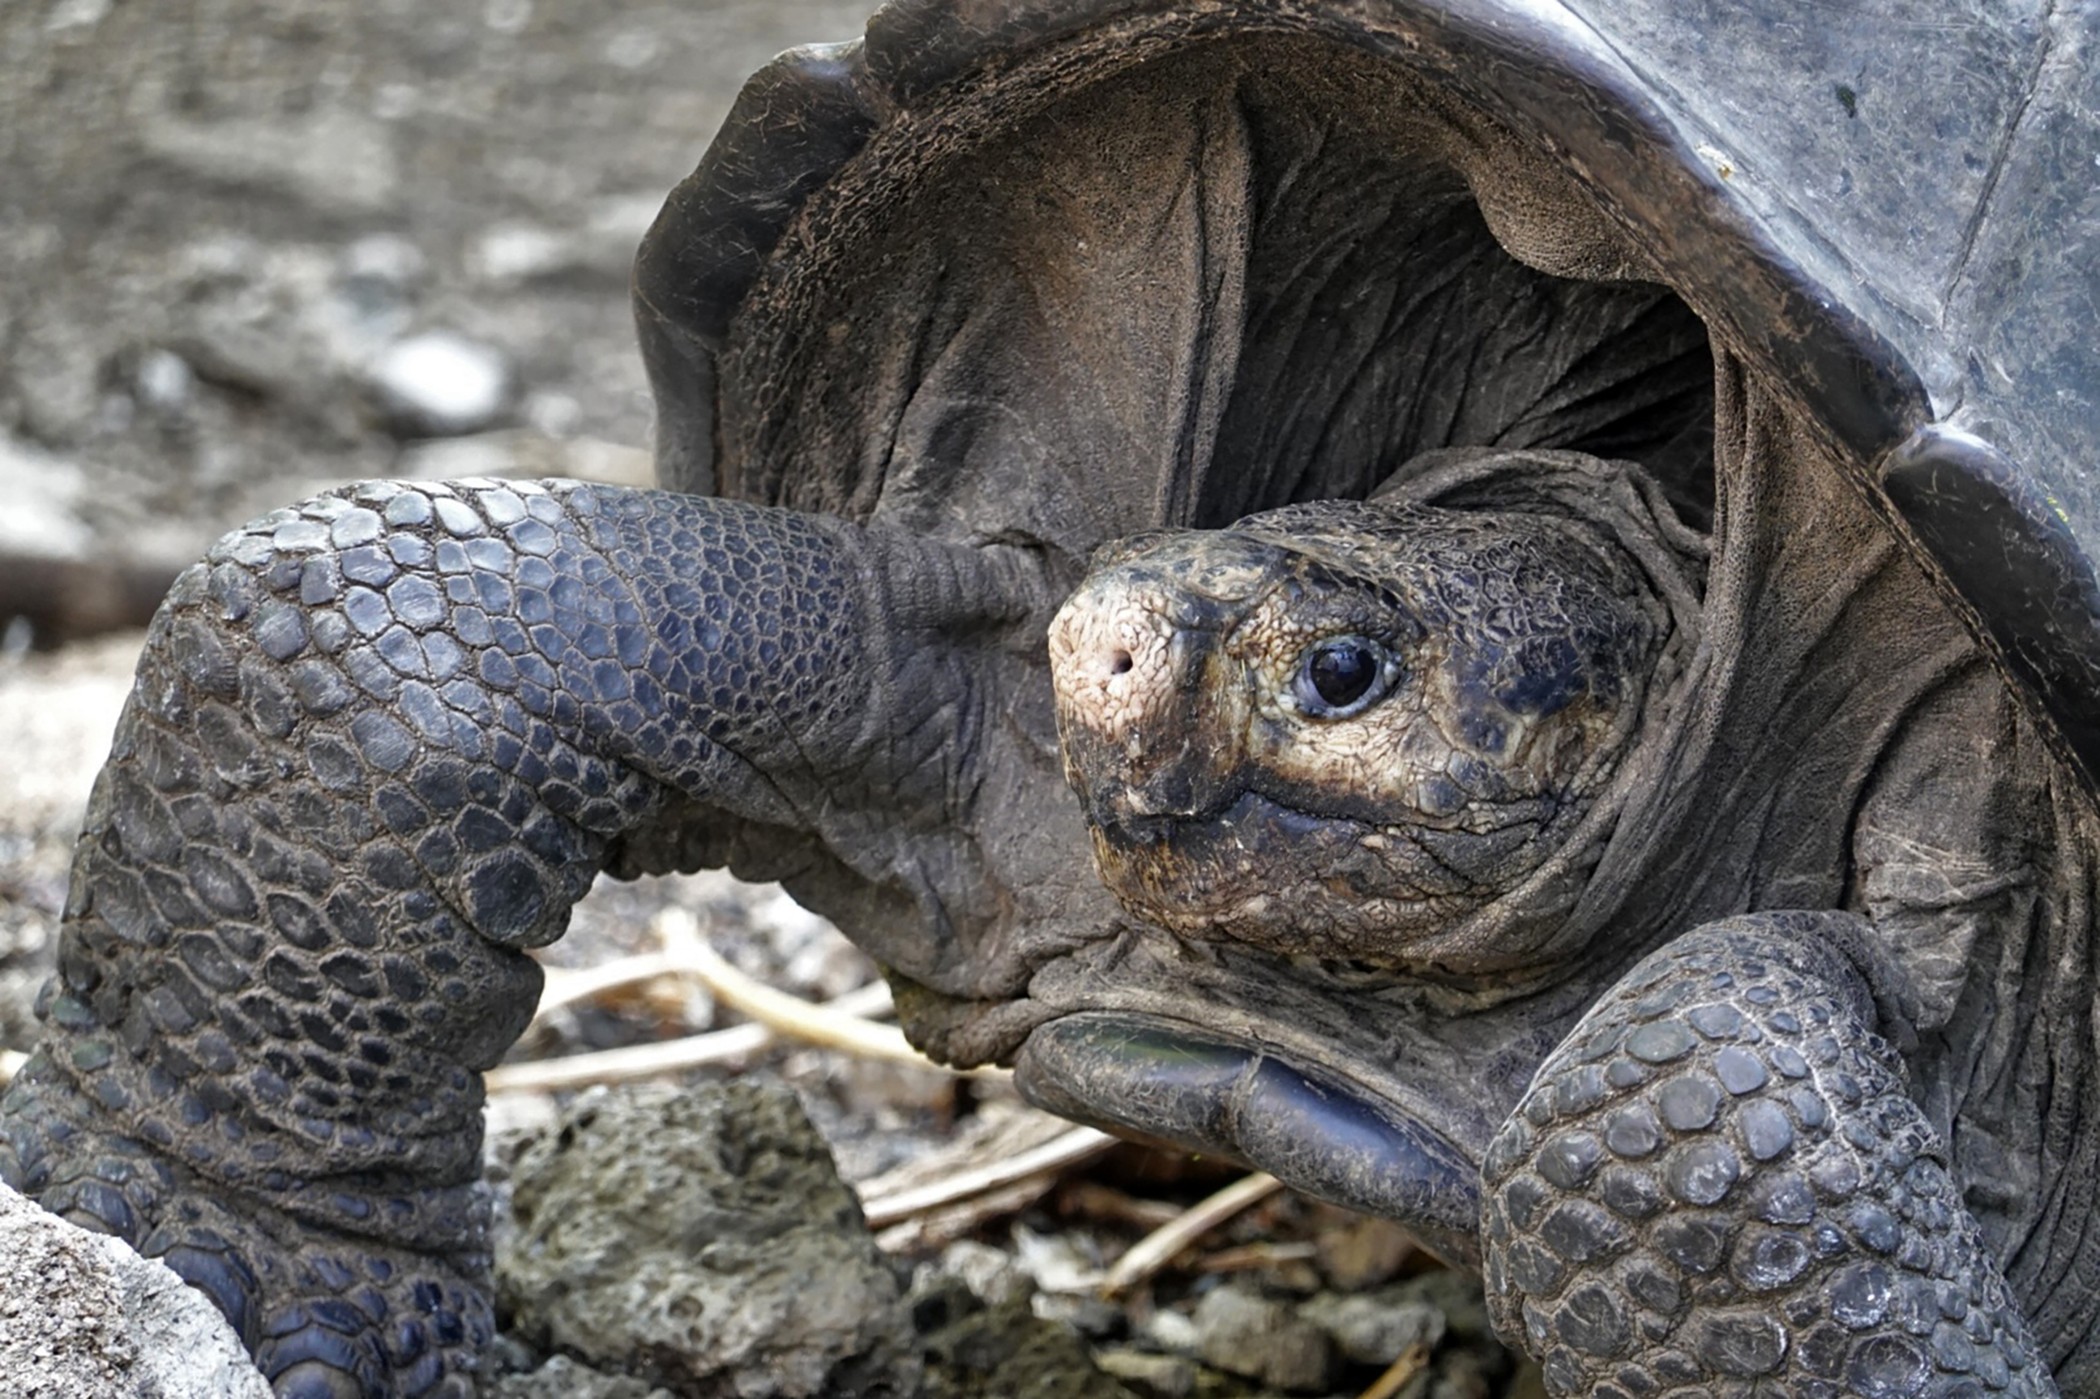 Tartaruga considerada extinta há 100 anos ainda existe em Galápagos, diz Equador thumbnail